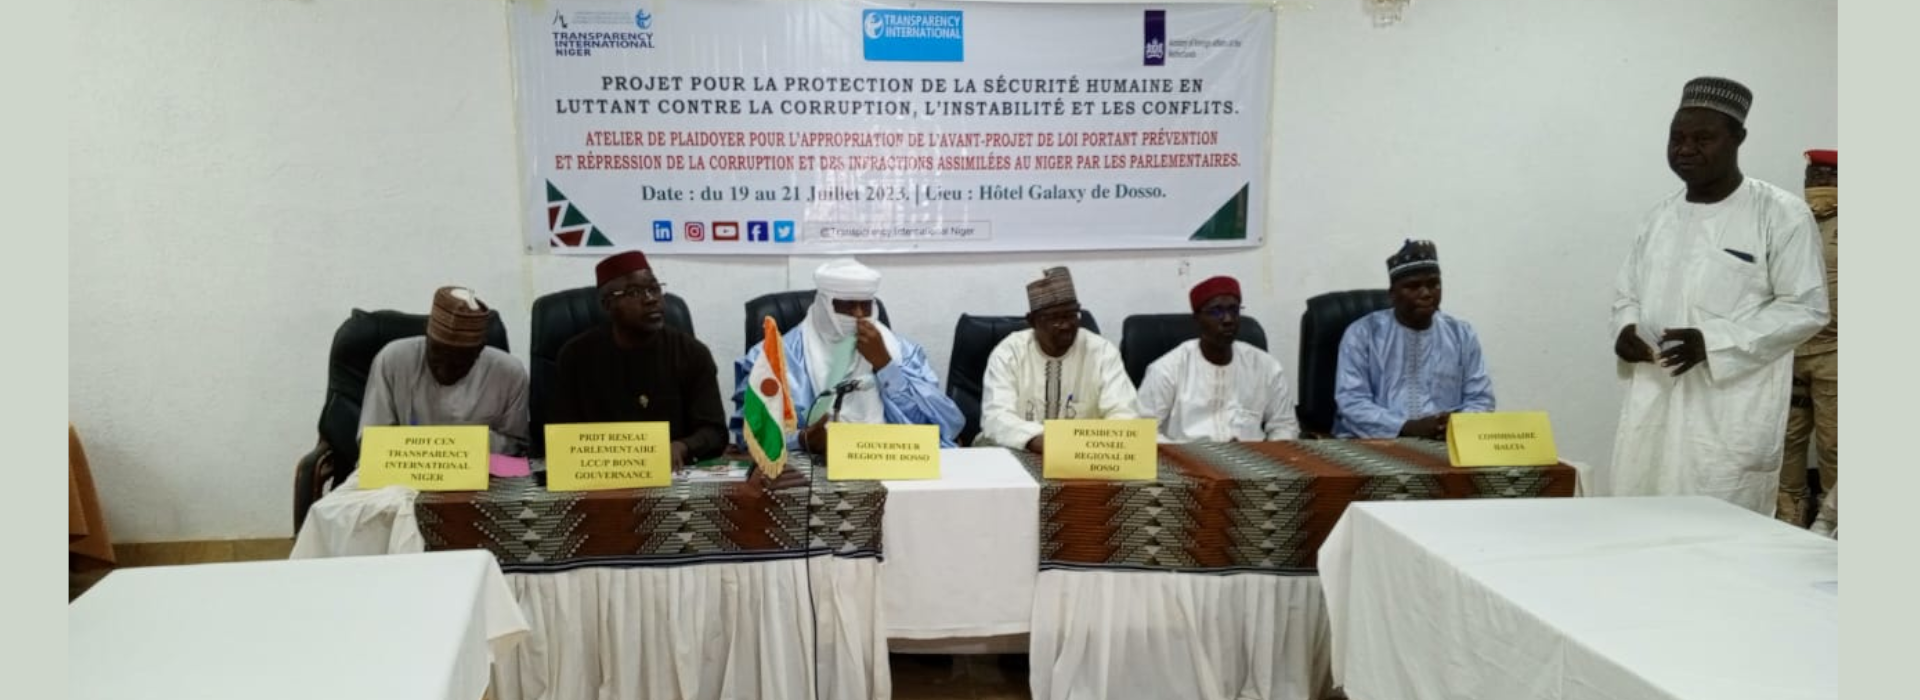 Atelier pour l’appropriation avec les Parlementaires, de l’avant-projet de loi portant prévention et répression de la corruption et des infractions assimilées au Niger